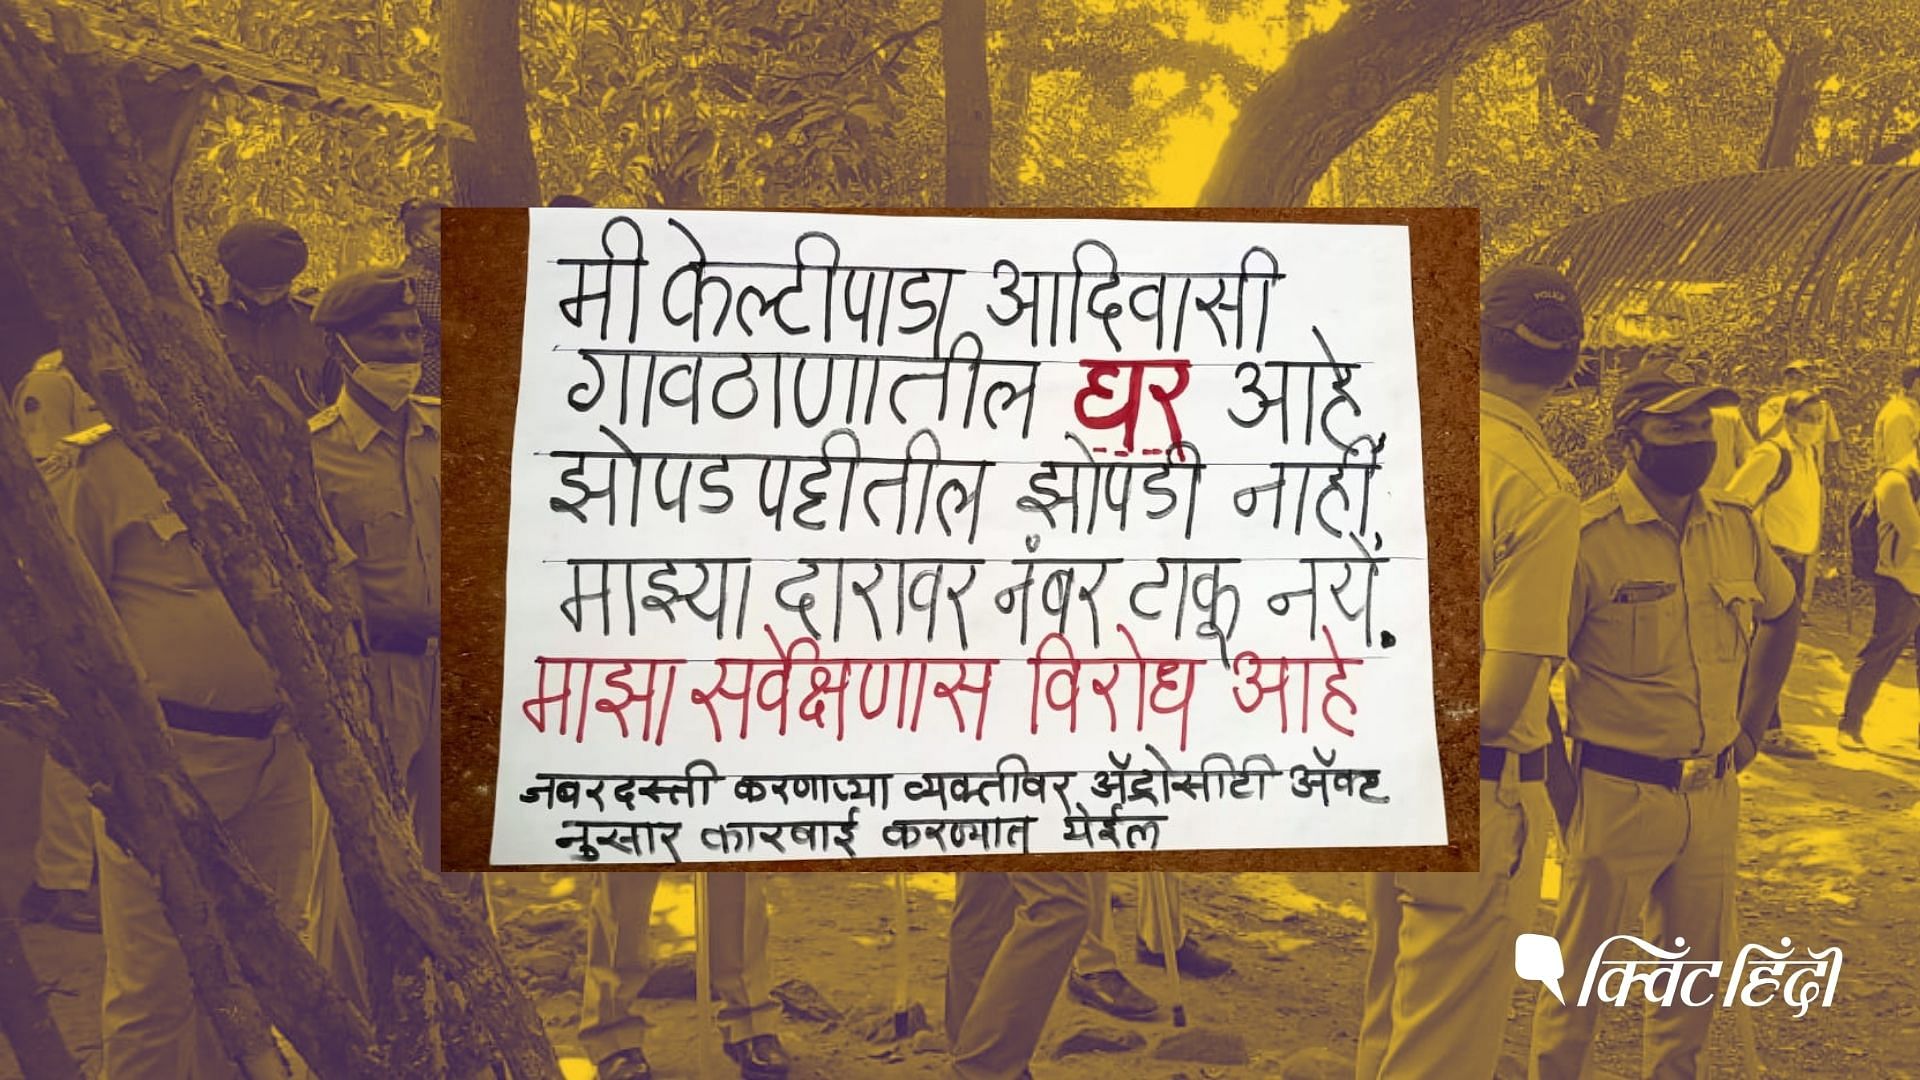 <div class="paragraphs"><p>"हम झुग्गी नहीं आदिवासी पाड़ो के निवासी हैं"- मुंबई के आरे जंगल में पहचान की जंग</p></div>